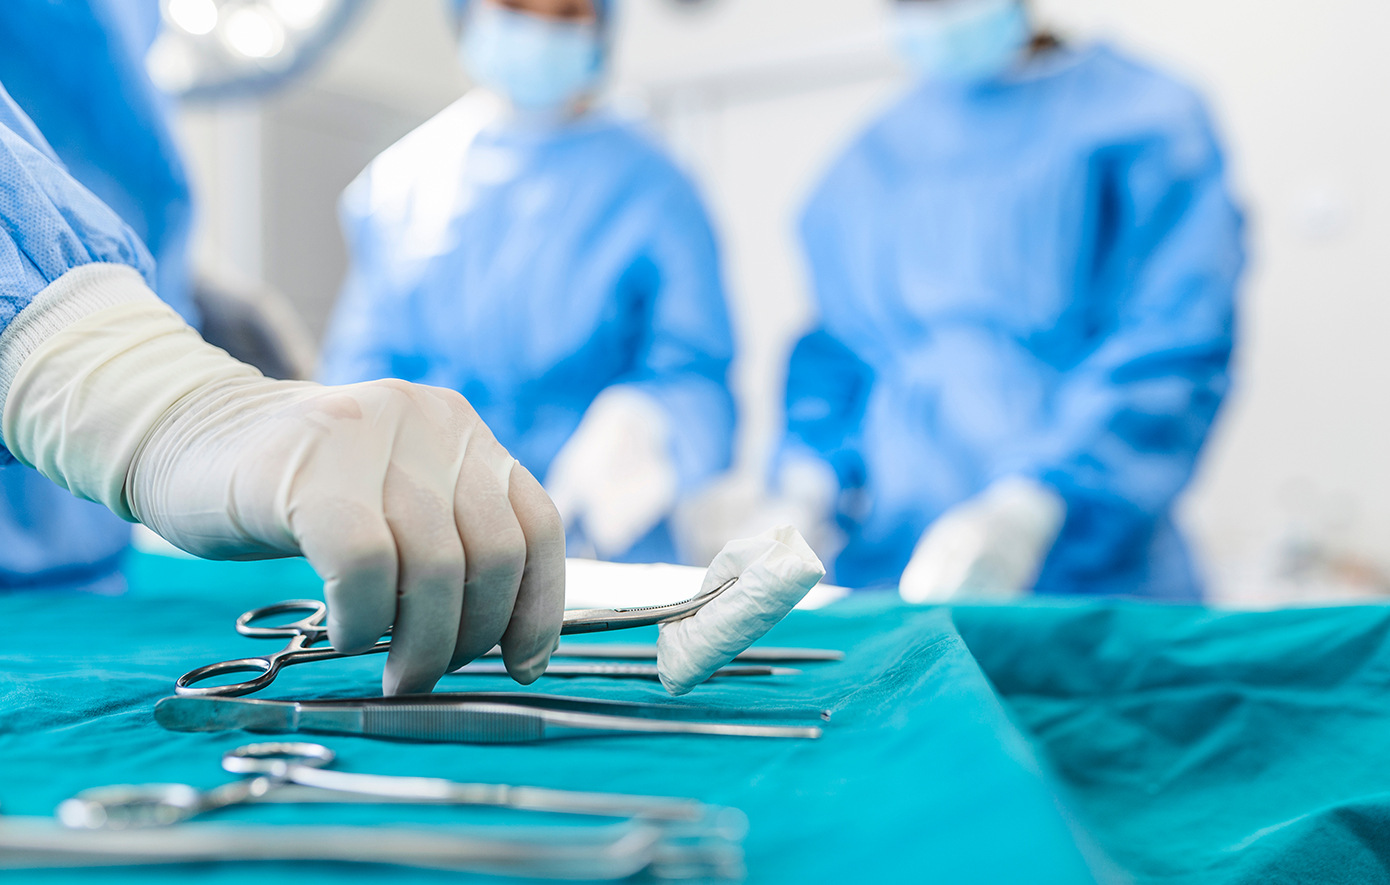 Ξεκινούν τα επόμενα 24ώρα τα απογευματινά χειρουργεία – Στο Εθνικό Τυπογραφείο η ΚΥΑ